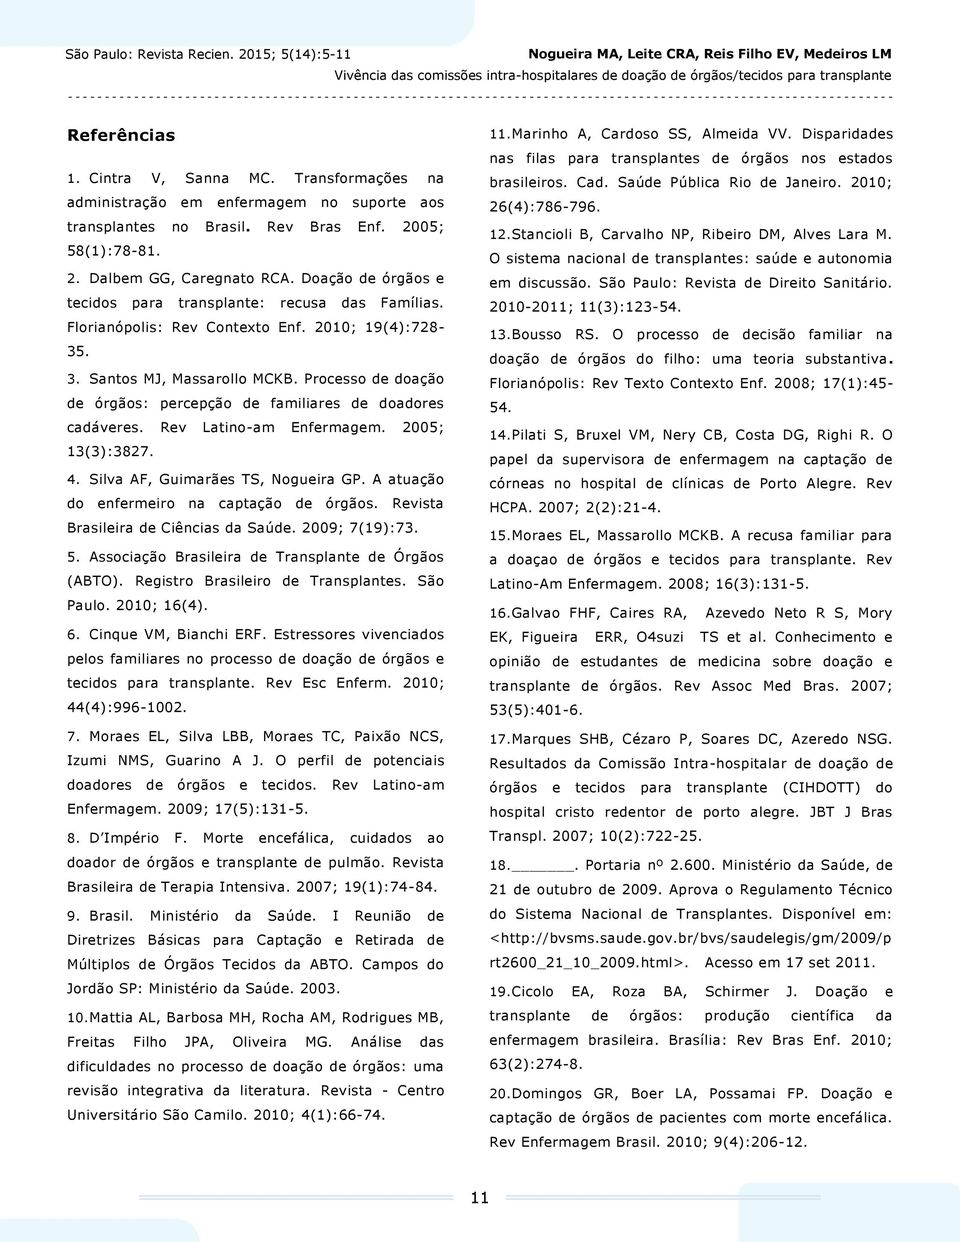 Processo de doação de órgãos: percepção de familiares de doadores cadáveres. Rev Latino-am Enfermagem. 2005; 13(3):3827. 4. Silva AF, Guimarães TS, Nogueira GP.